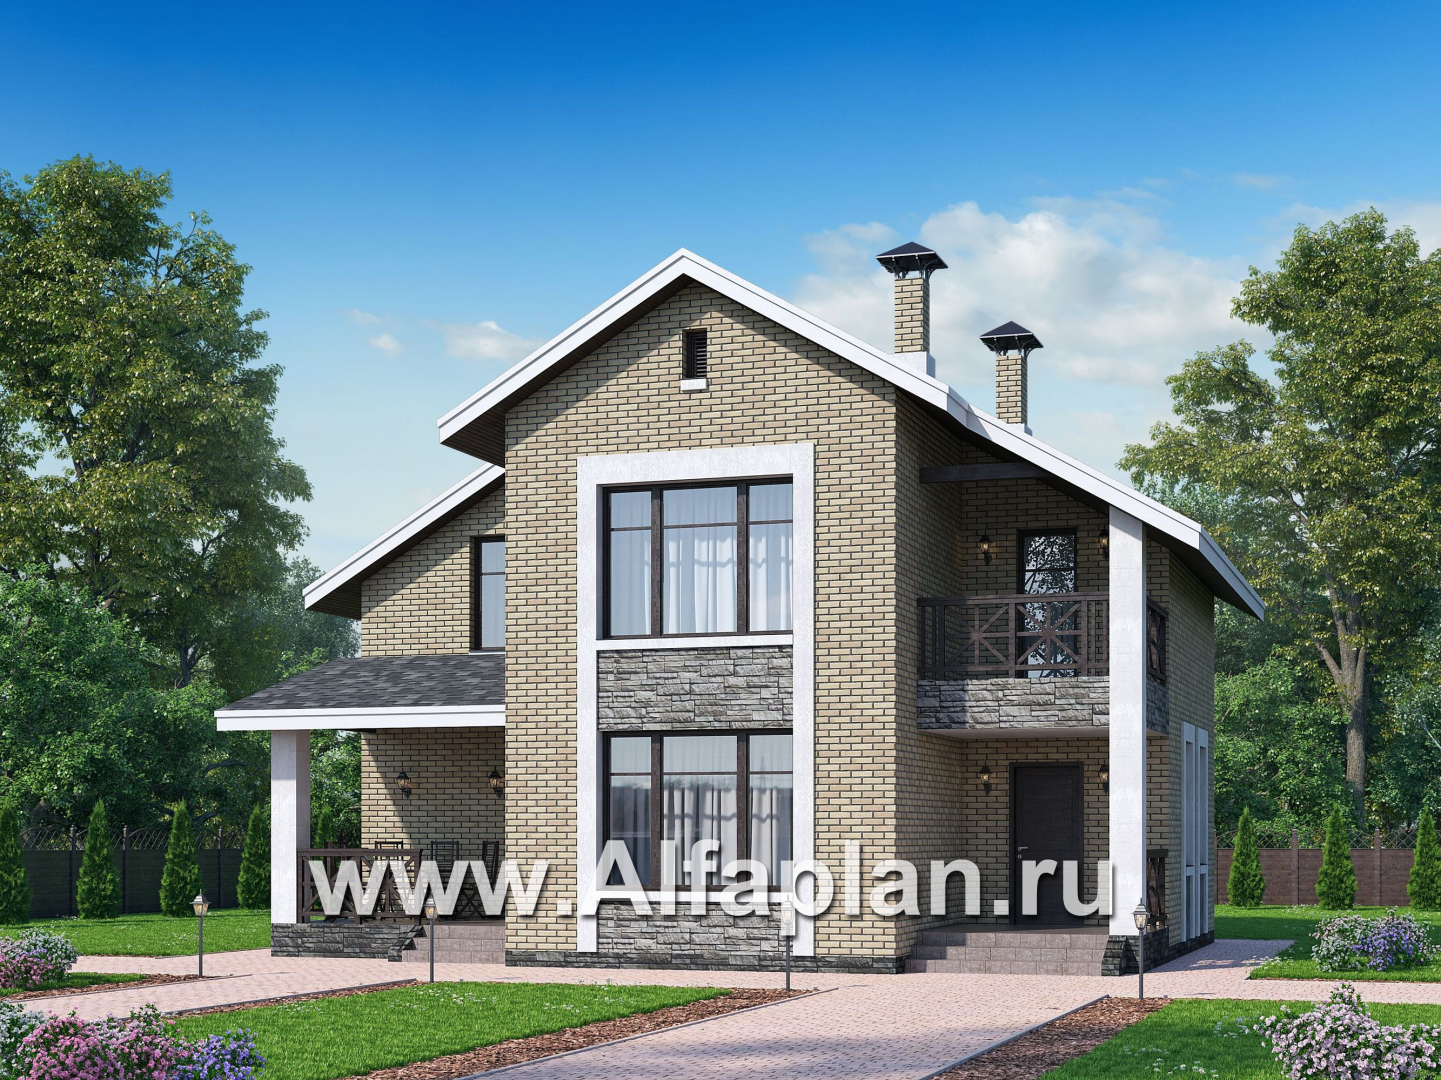 «Ижора» - проект дома с мансардой, планировка дома с террасой, с двускатной кровлей - дизайн дома №1